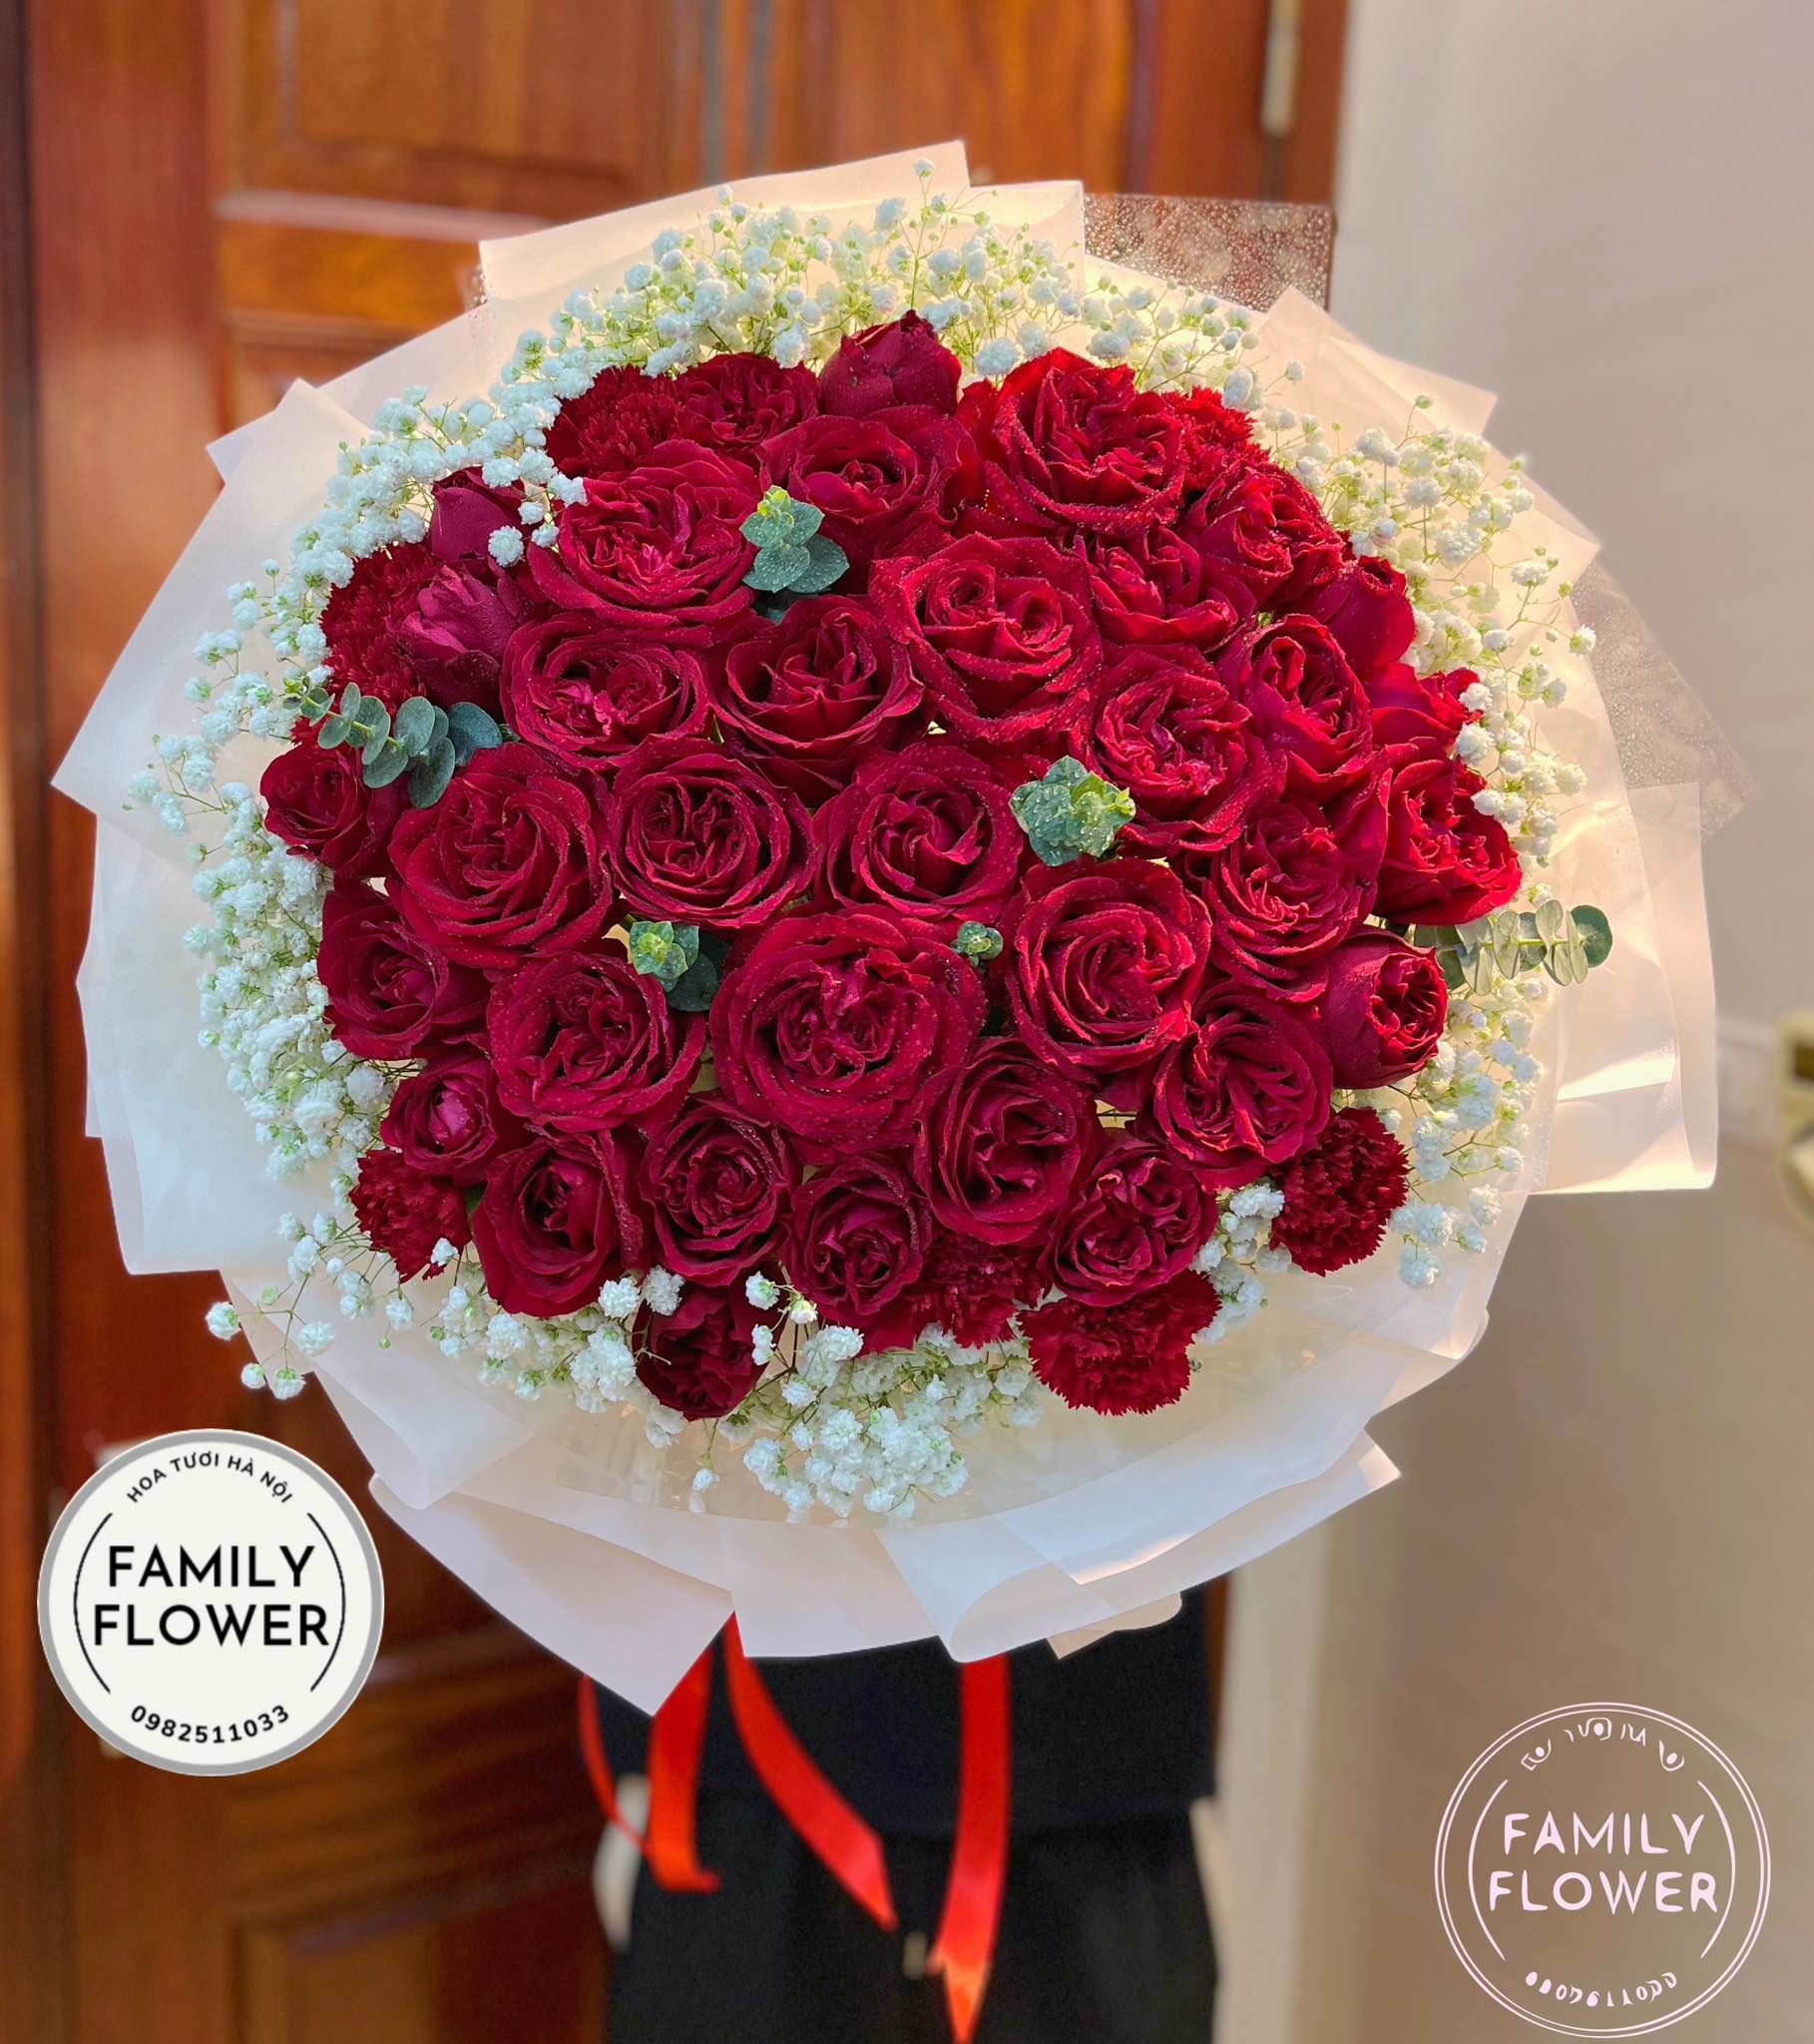 Bó hoa hồng đỏ tặng người yêu , vợ nhân dịp ngày phụ nữ Việt Nam 20 tháng 10 tại Hà Nội